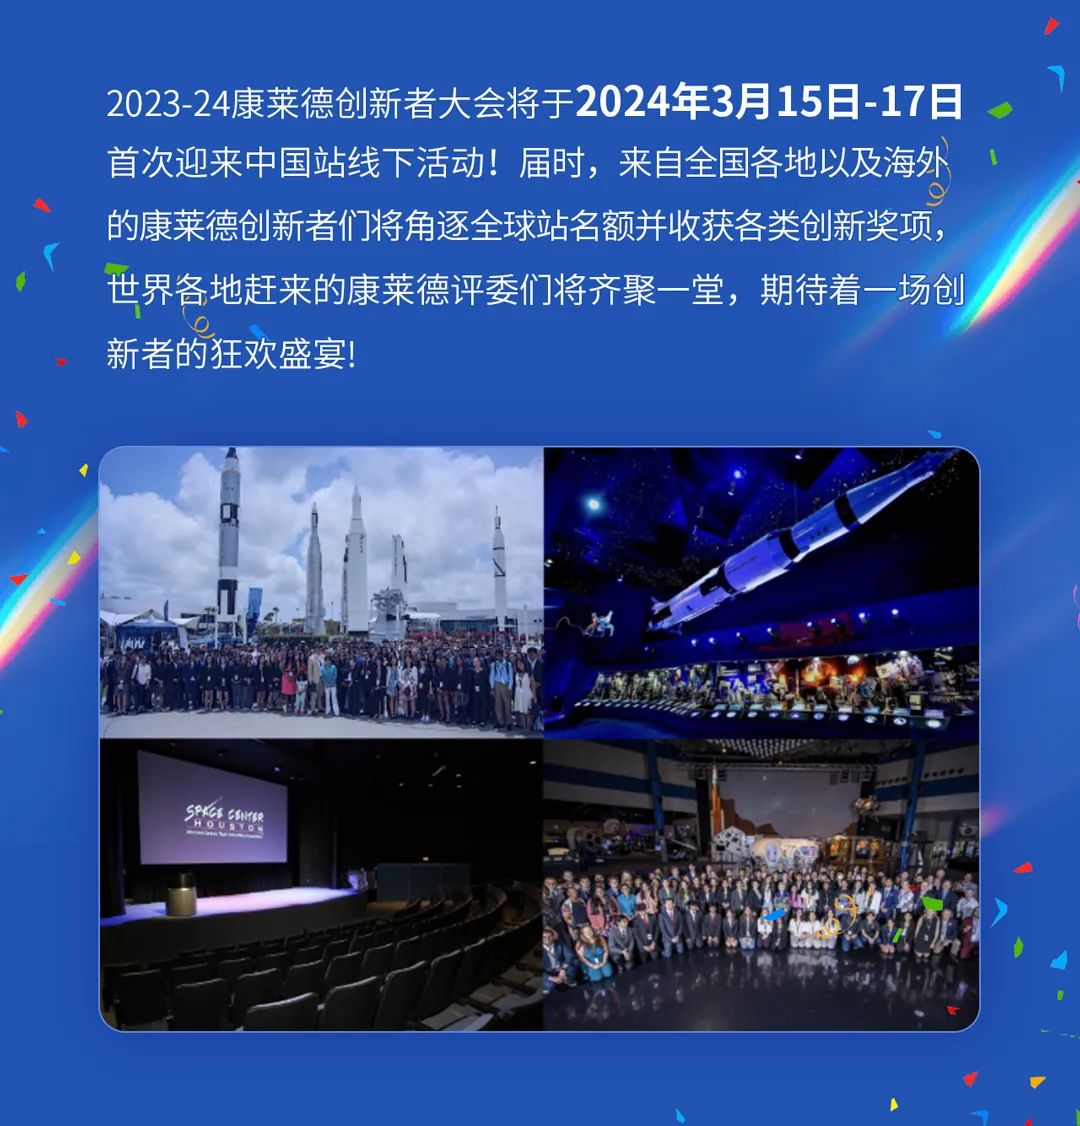 恭喜晋级！2023-24康莱德创新者大会中国站，决选入围榜单揭晓！